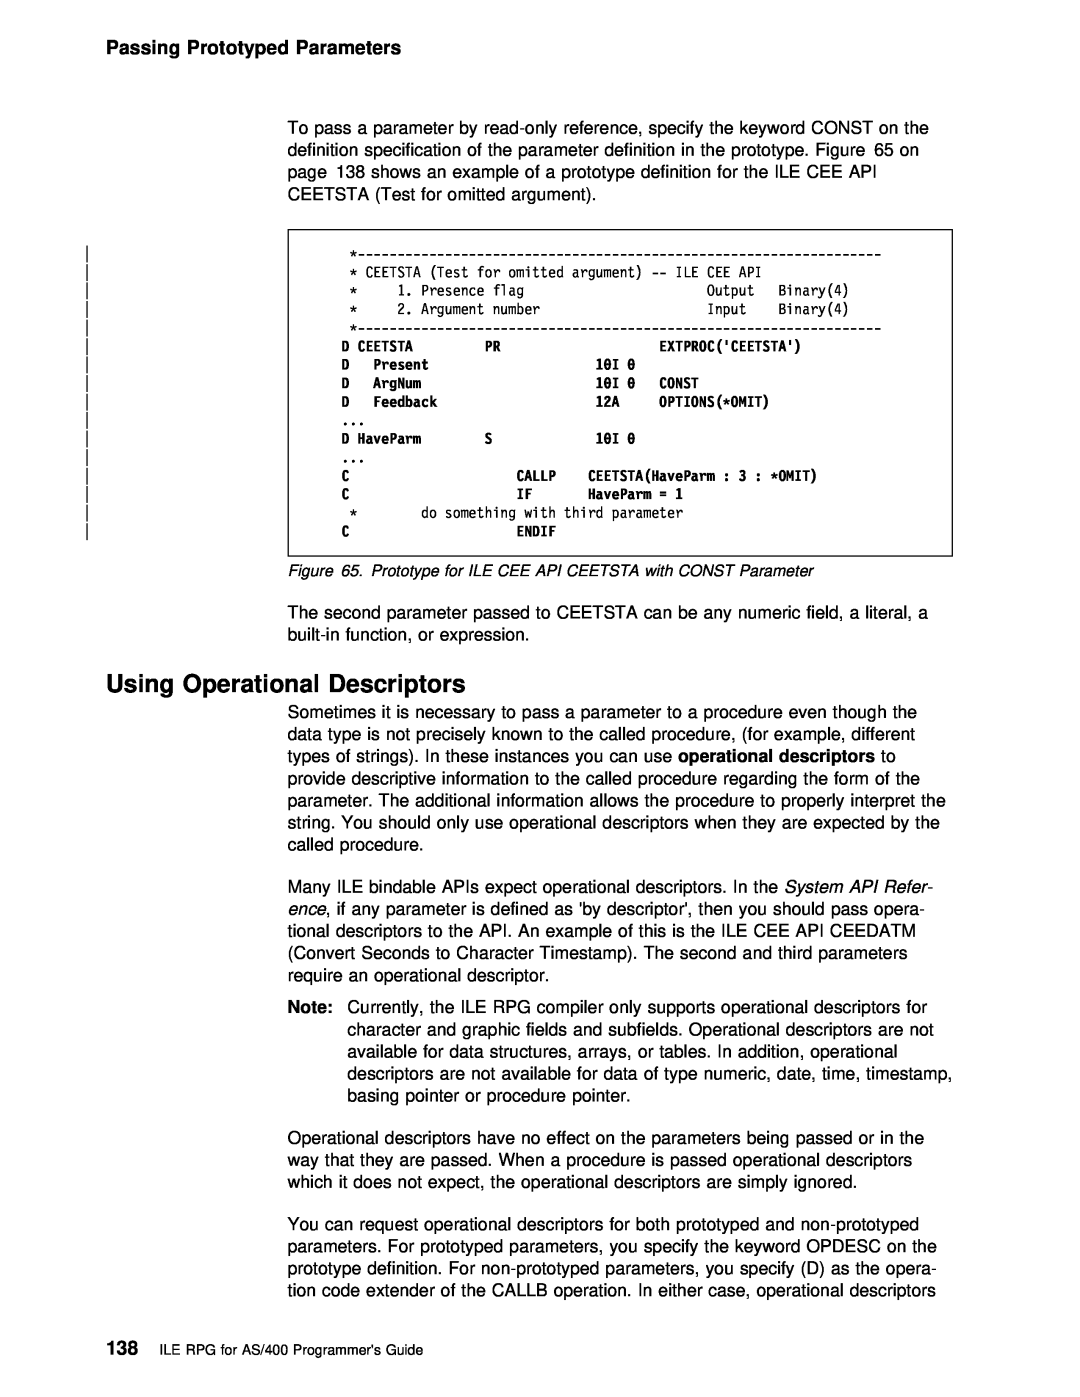 IBM AS/400 manual Using Operational Descriptors, Passing Prototyped Parameters 